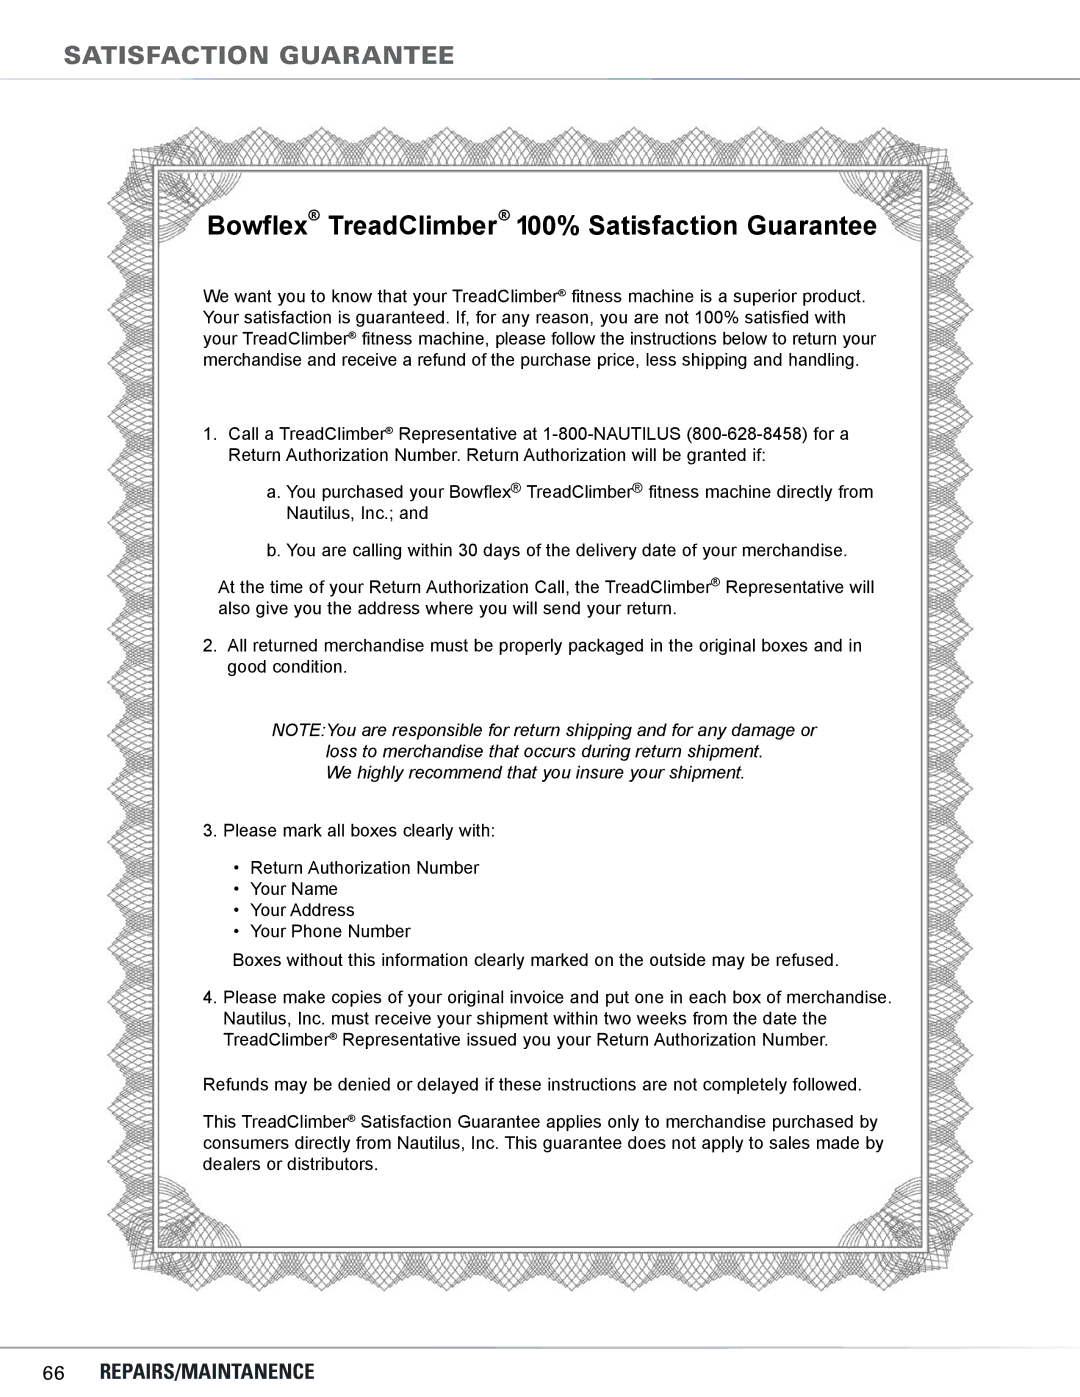 Bowflex TC5300, TC6000 manual Bowflex TreadClimber 100% Satisfaction Guarantee, Satisfaction guarantee 